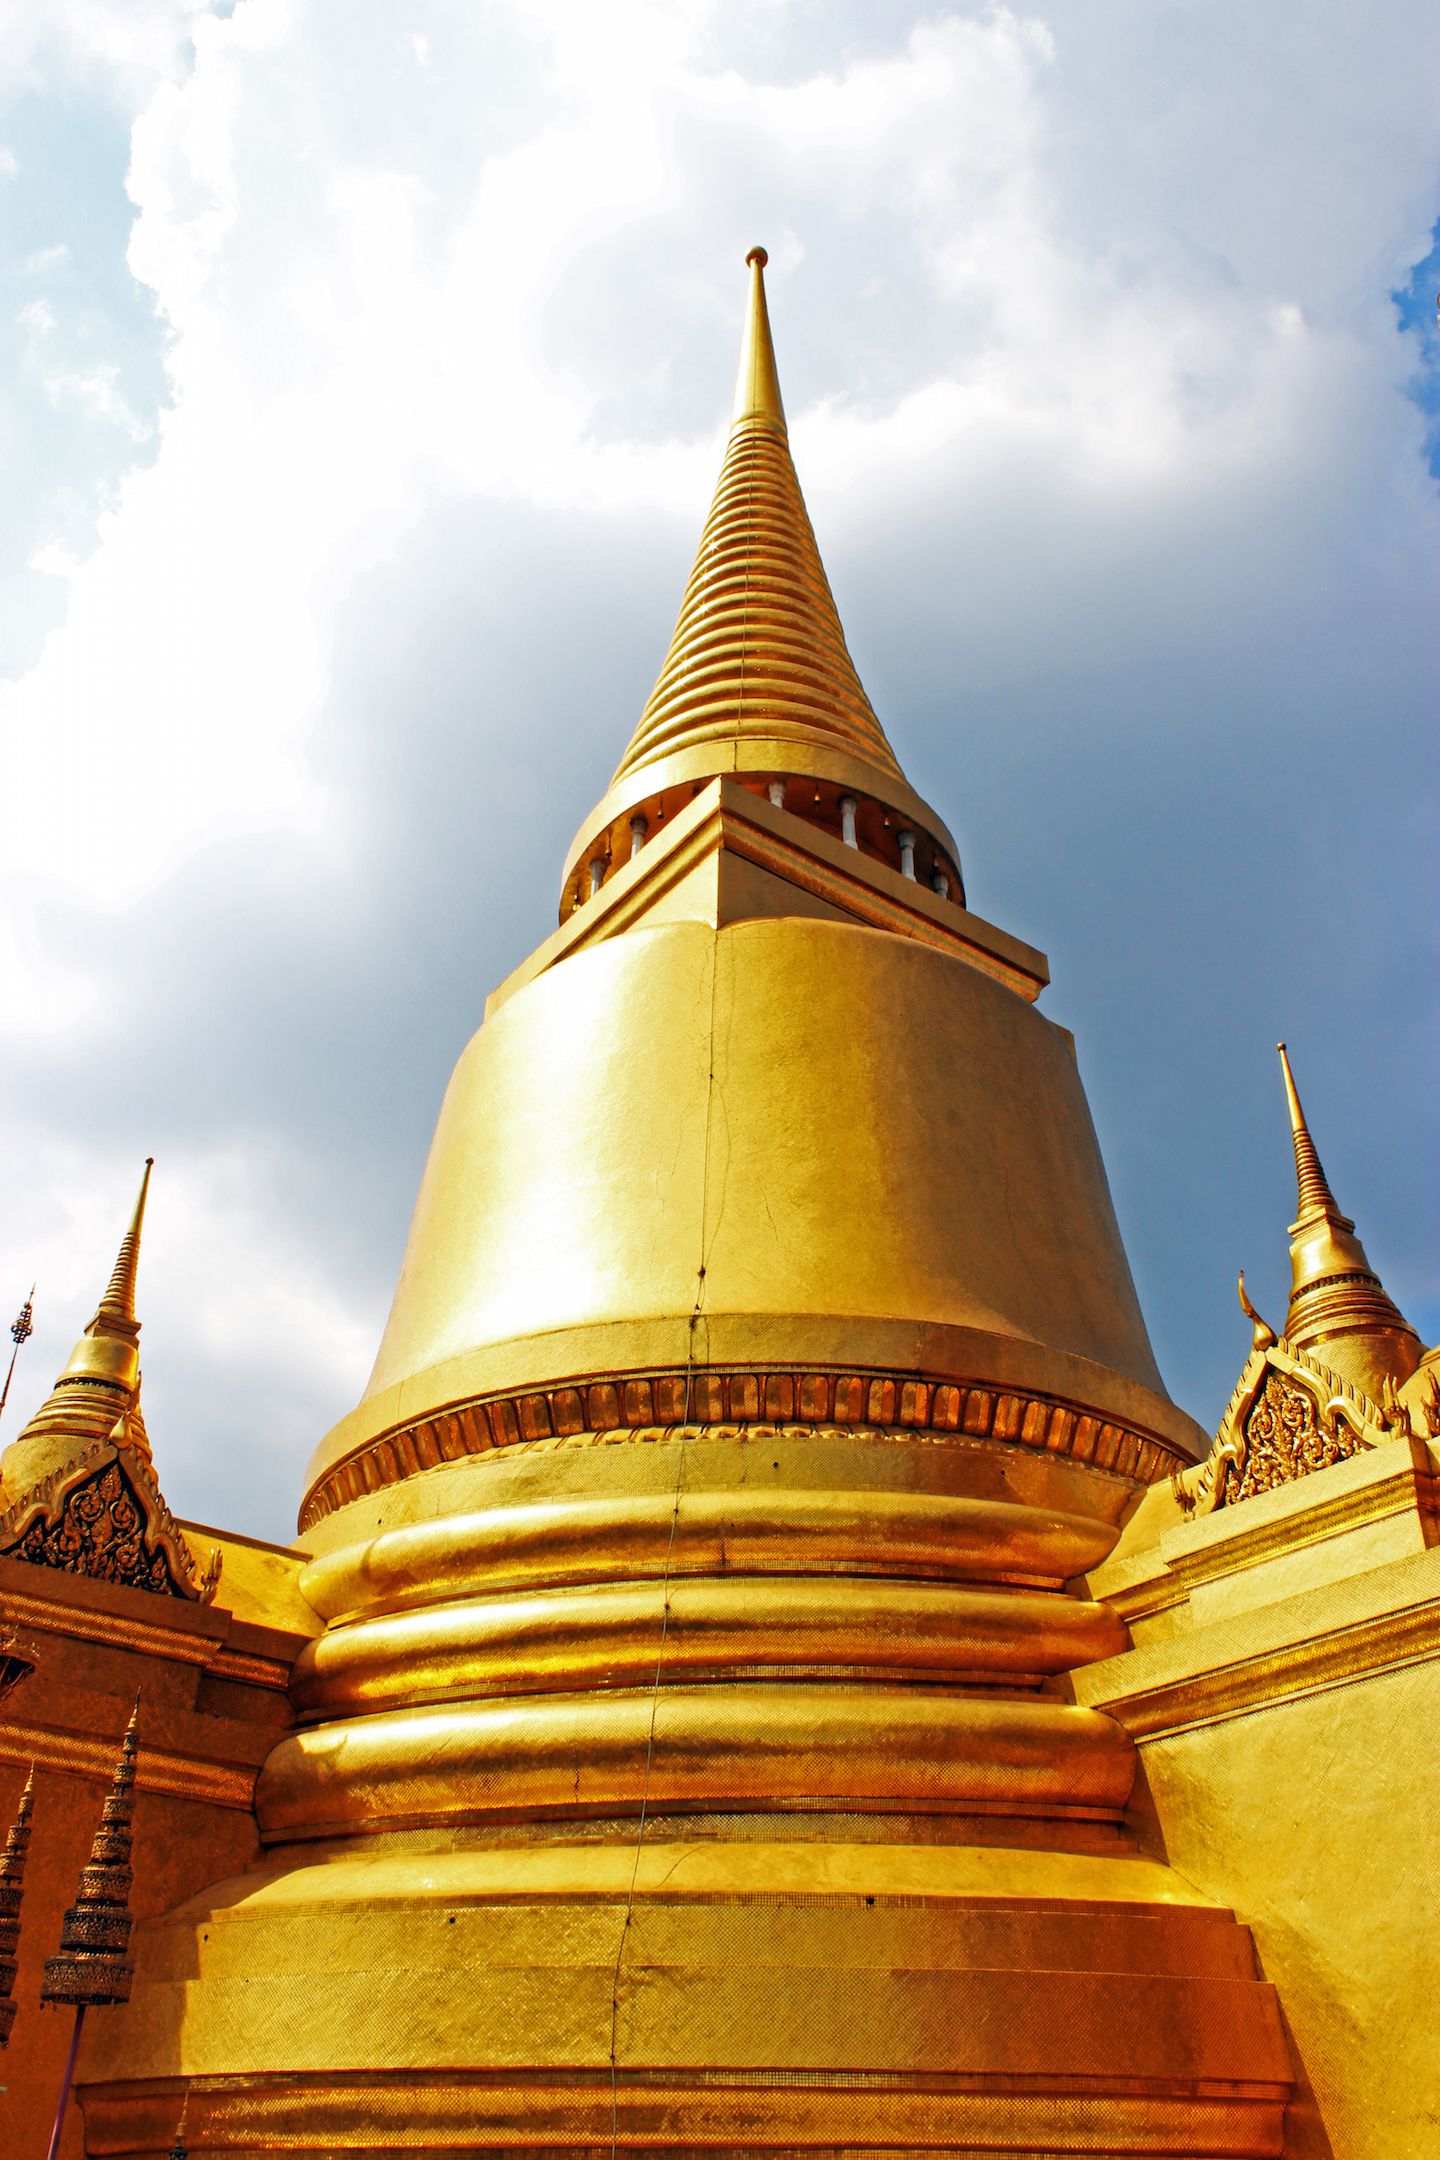 Rear view of Phra Sri Rattana Chedi at the Grand Palace in Bangkok